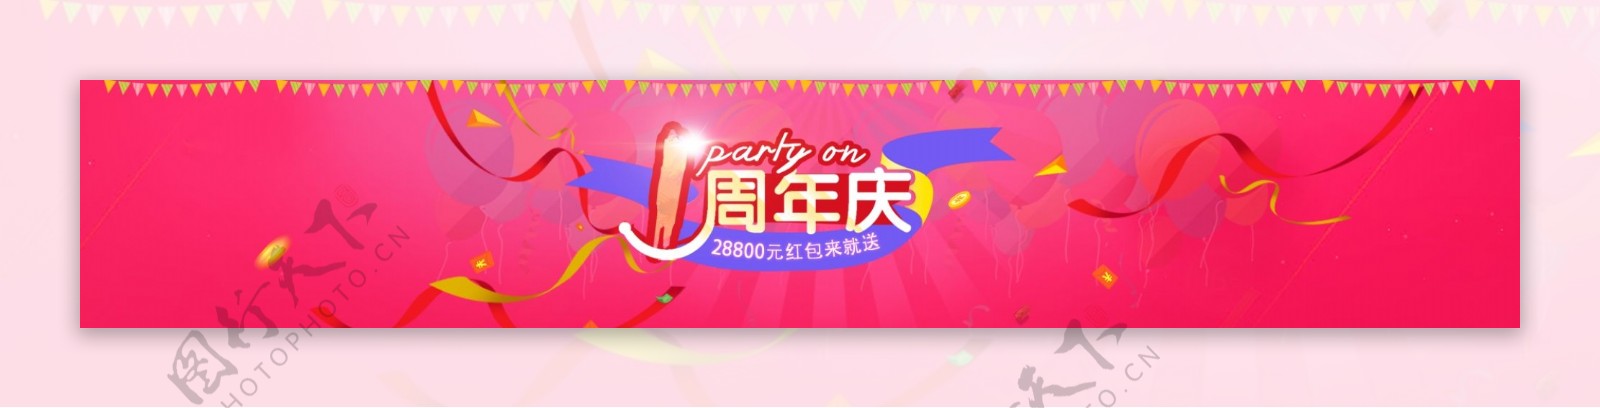 周年庆banner